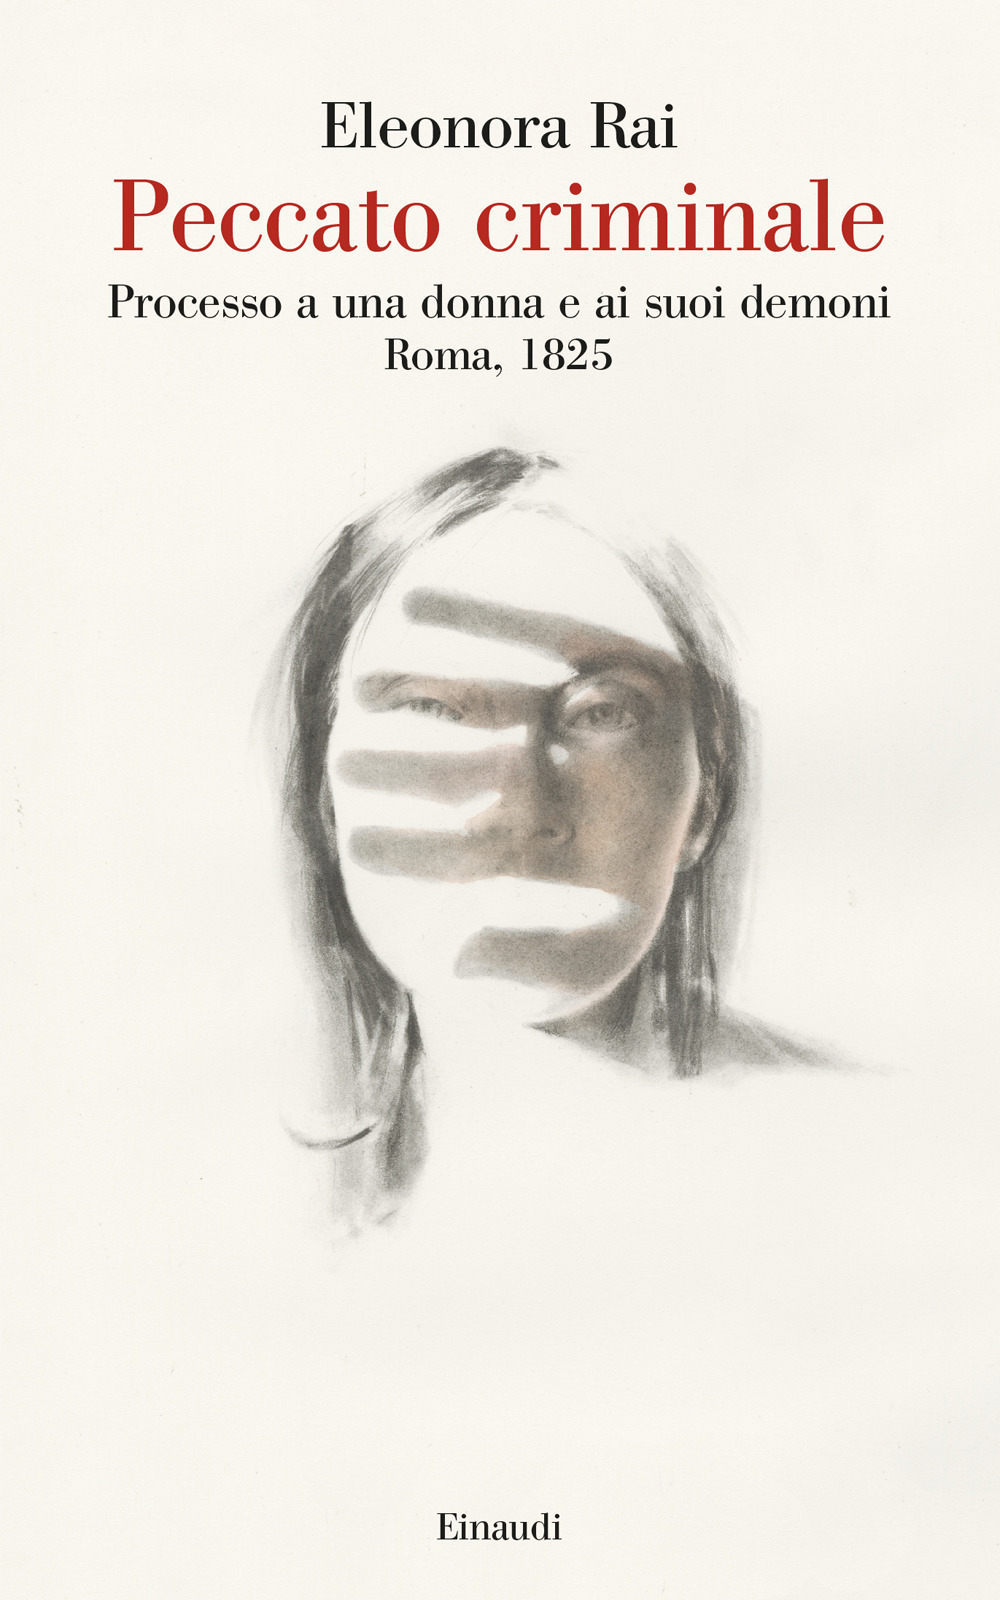 Peccato criminale. Processo a una donna e ai suoi demoni. Roma, 1825